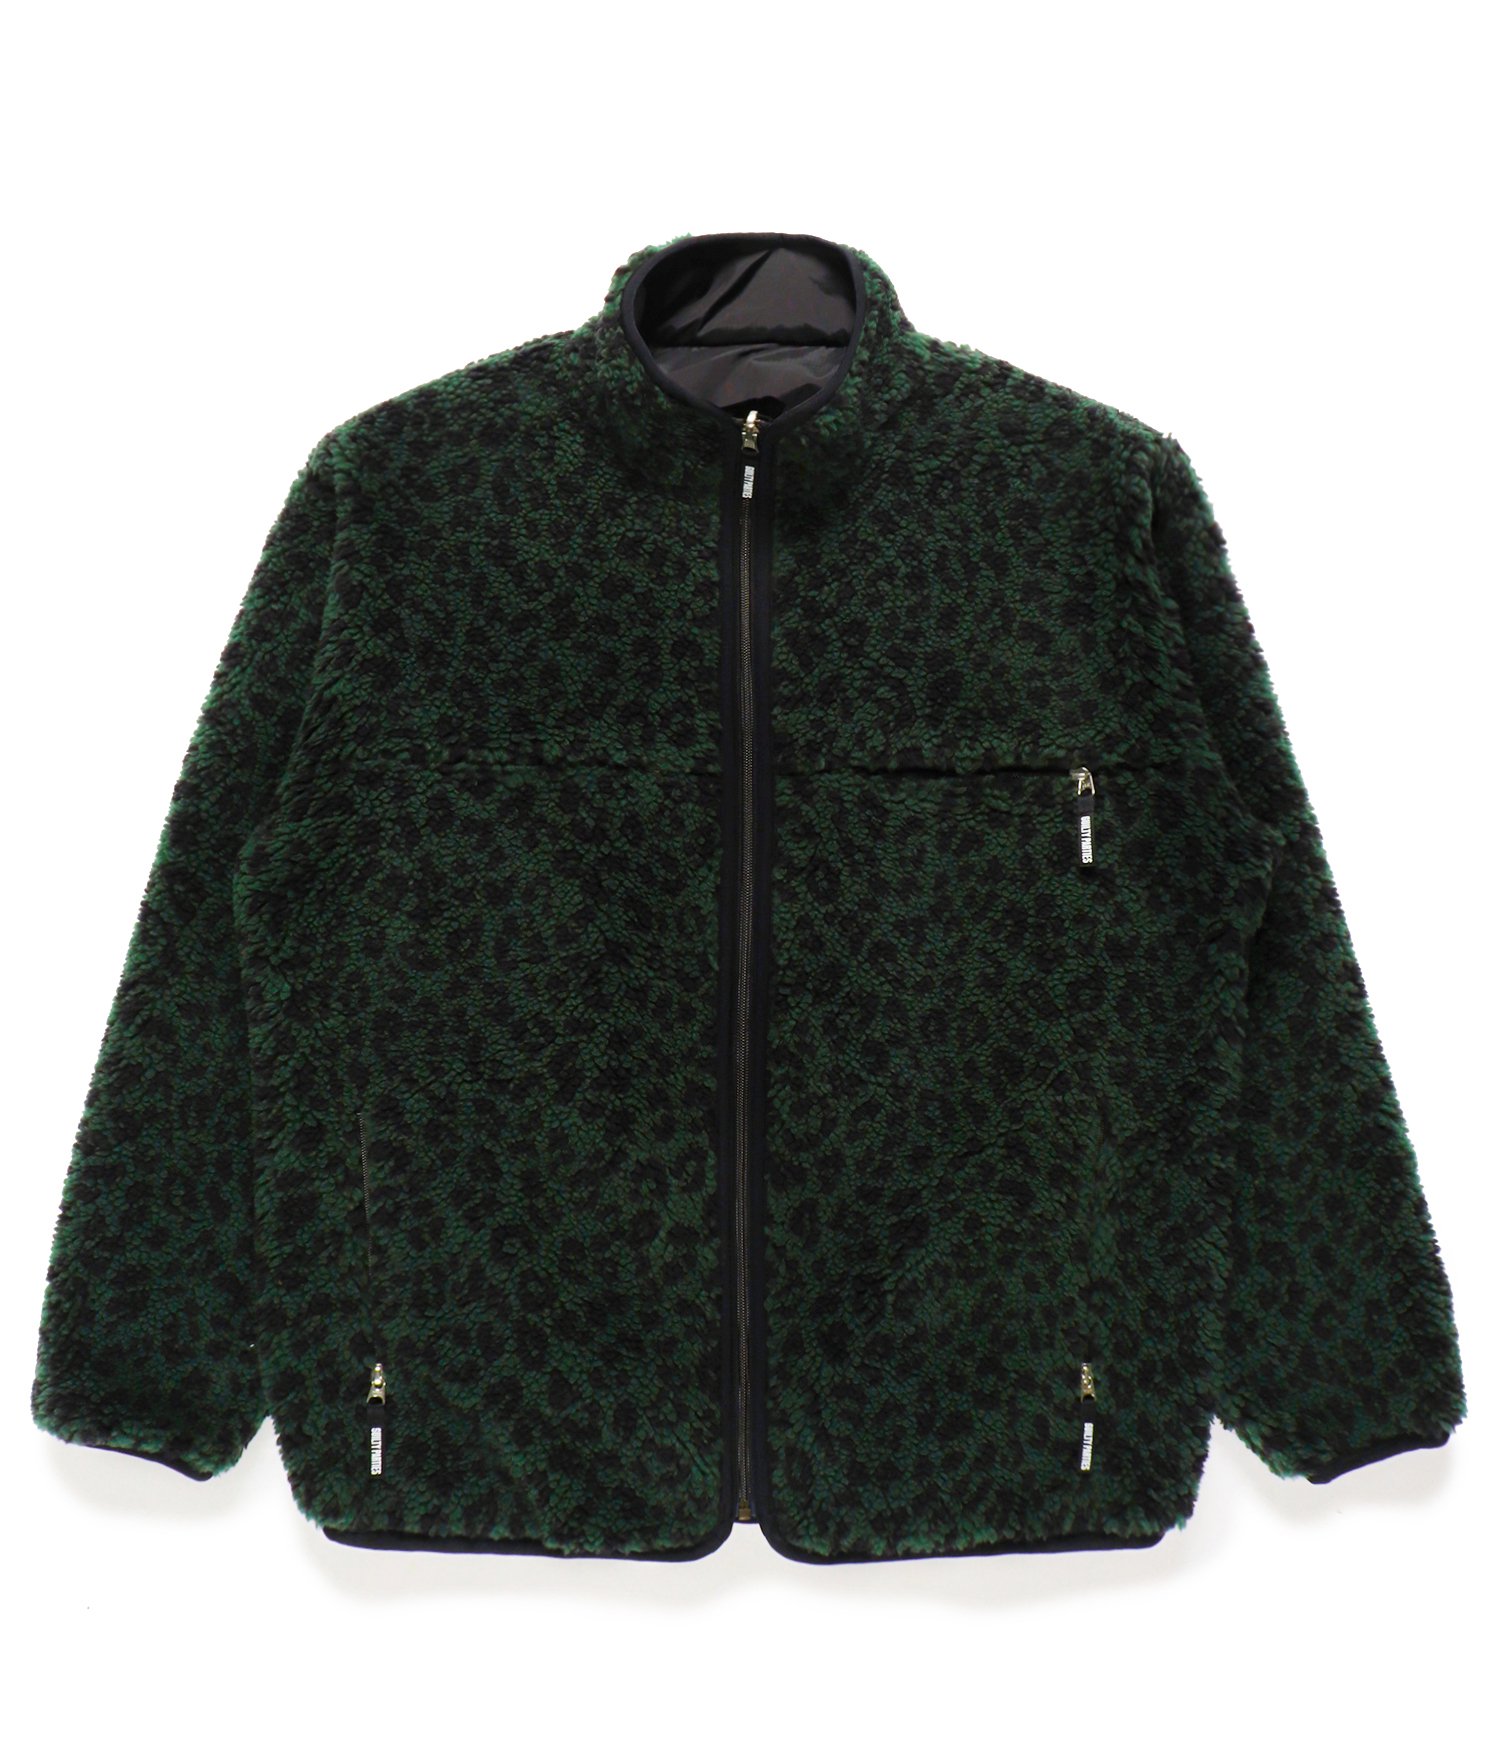 ブルゾンeveryone fullzip fleece jacket (BLACK) - ブルゾン